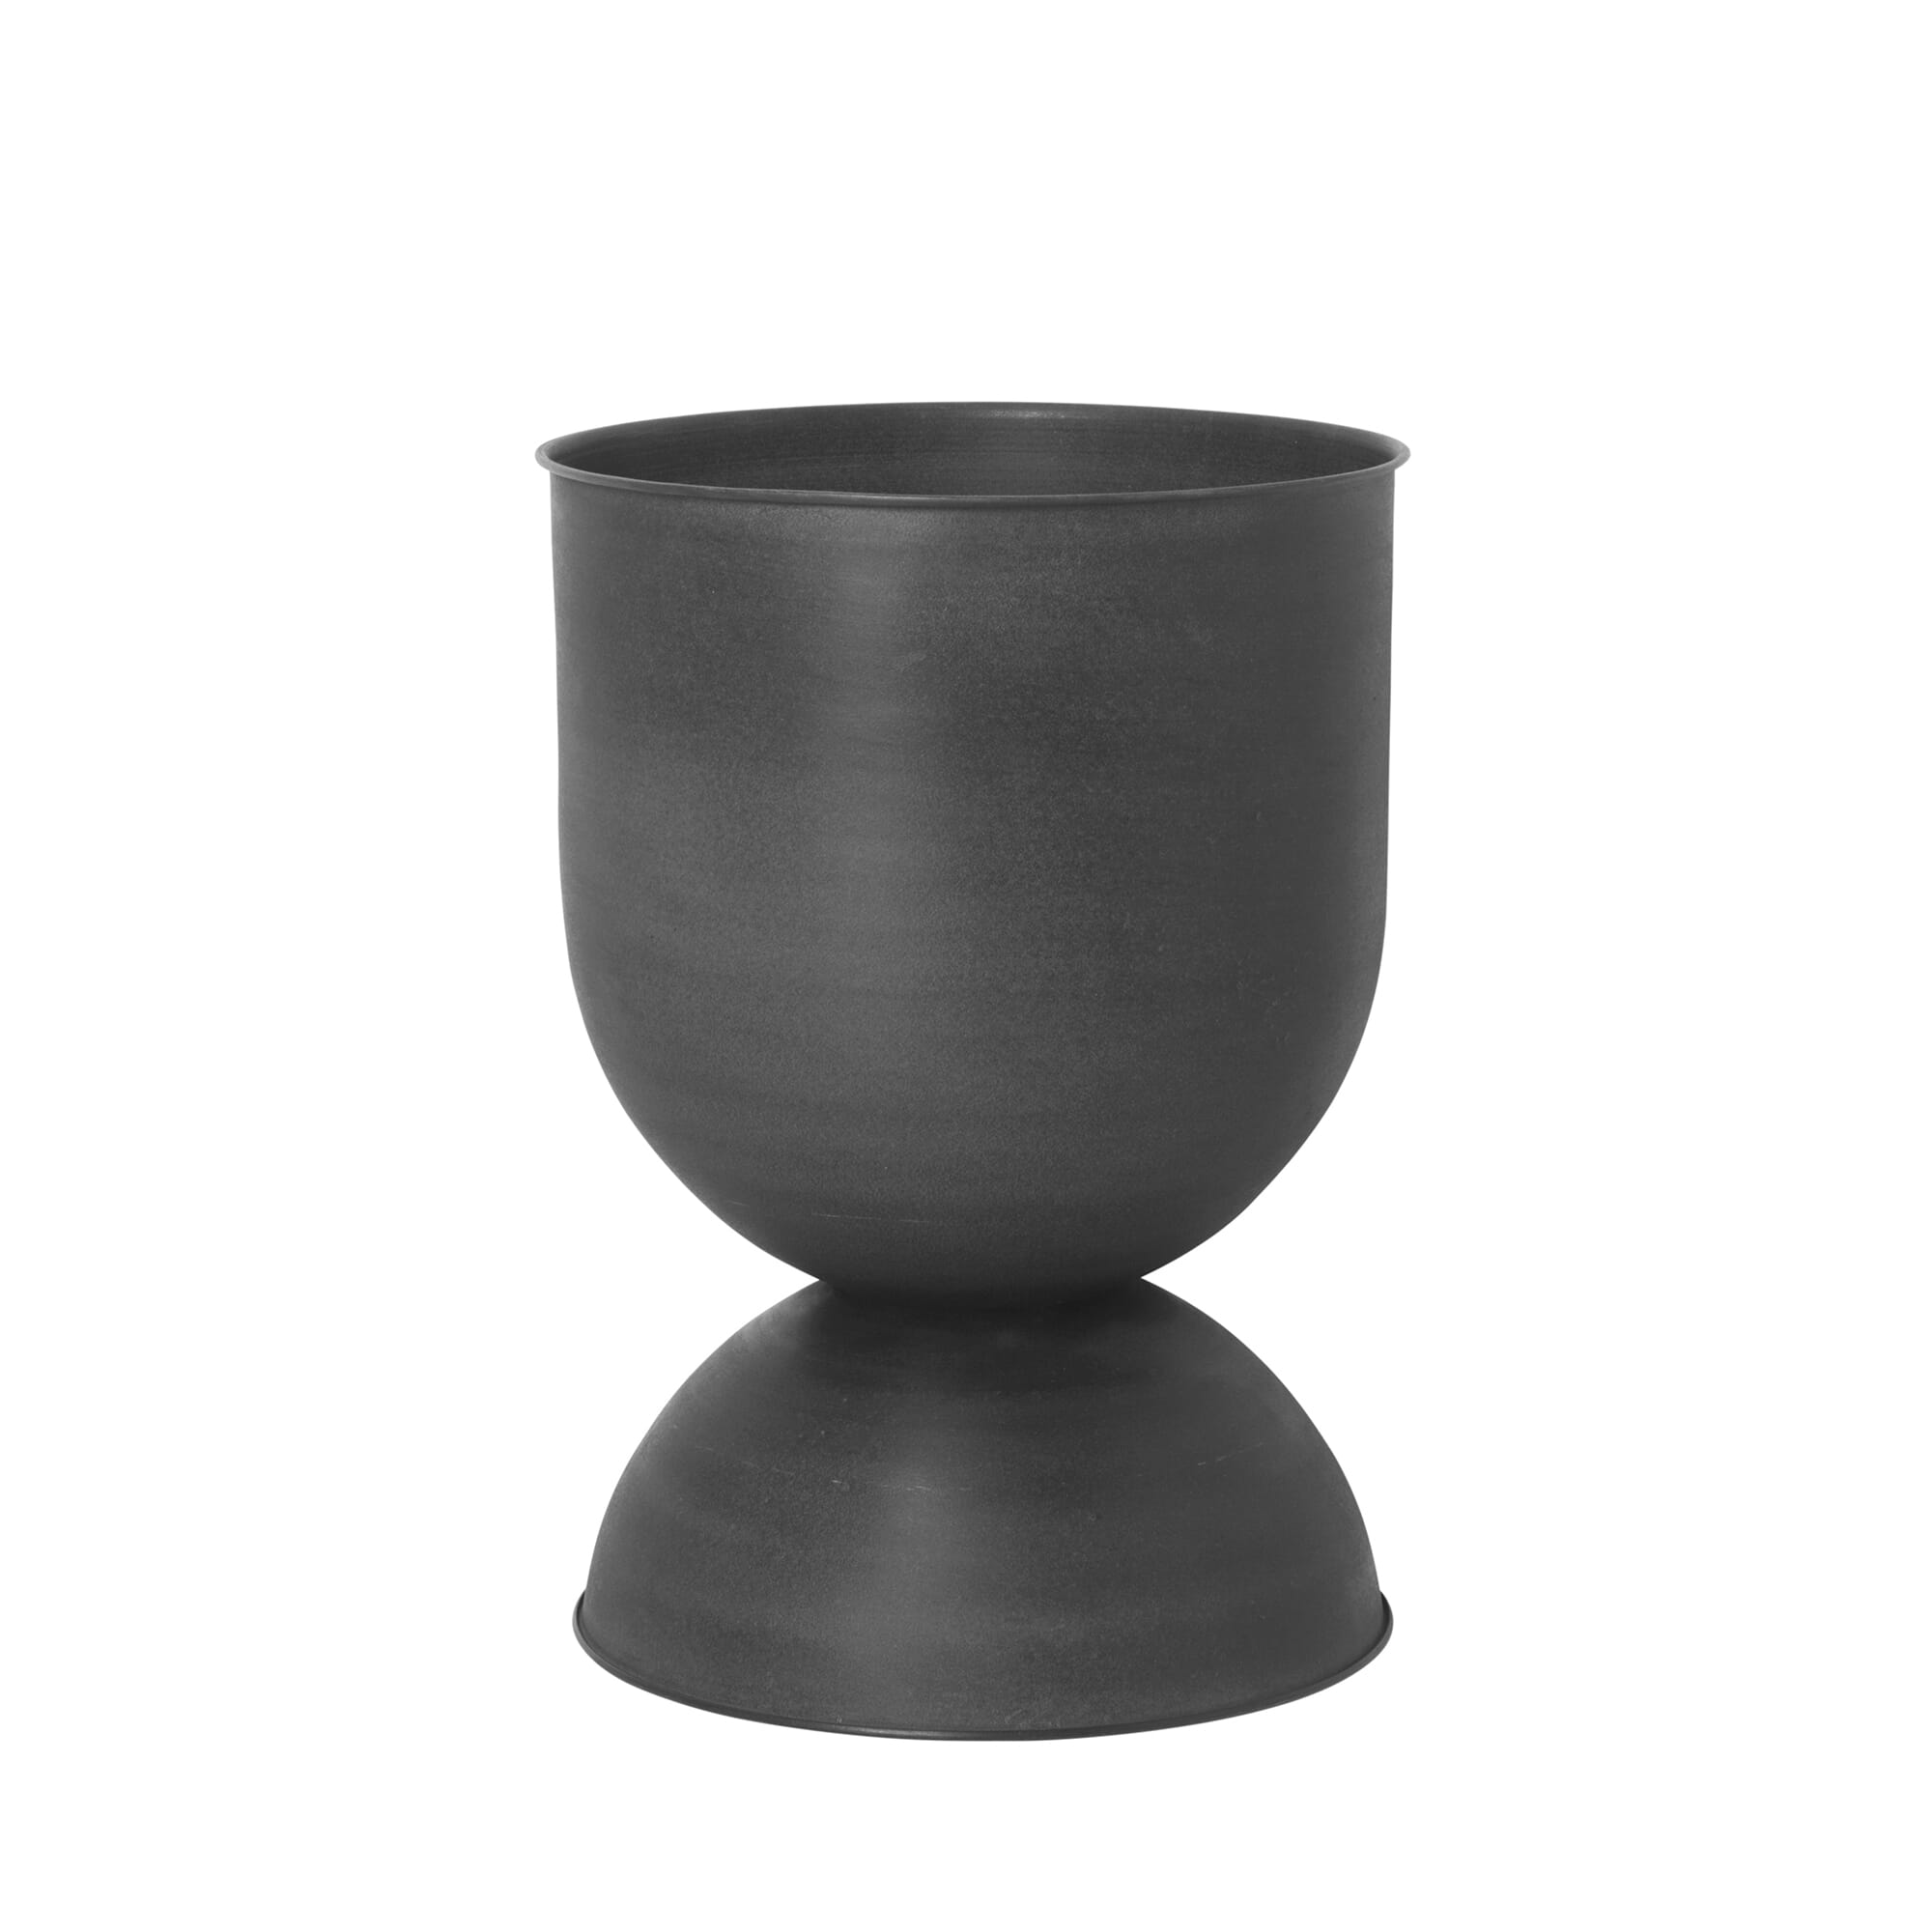 Bilde av Ferm Living - Ferm Living Hourglass Pot Black Medium - Lunehjem.no - Interiør På Nett